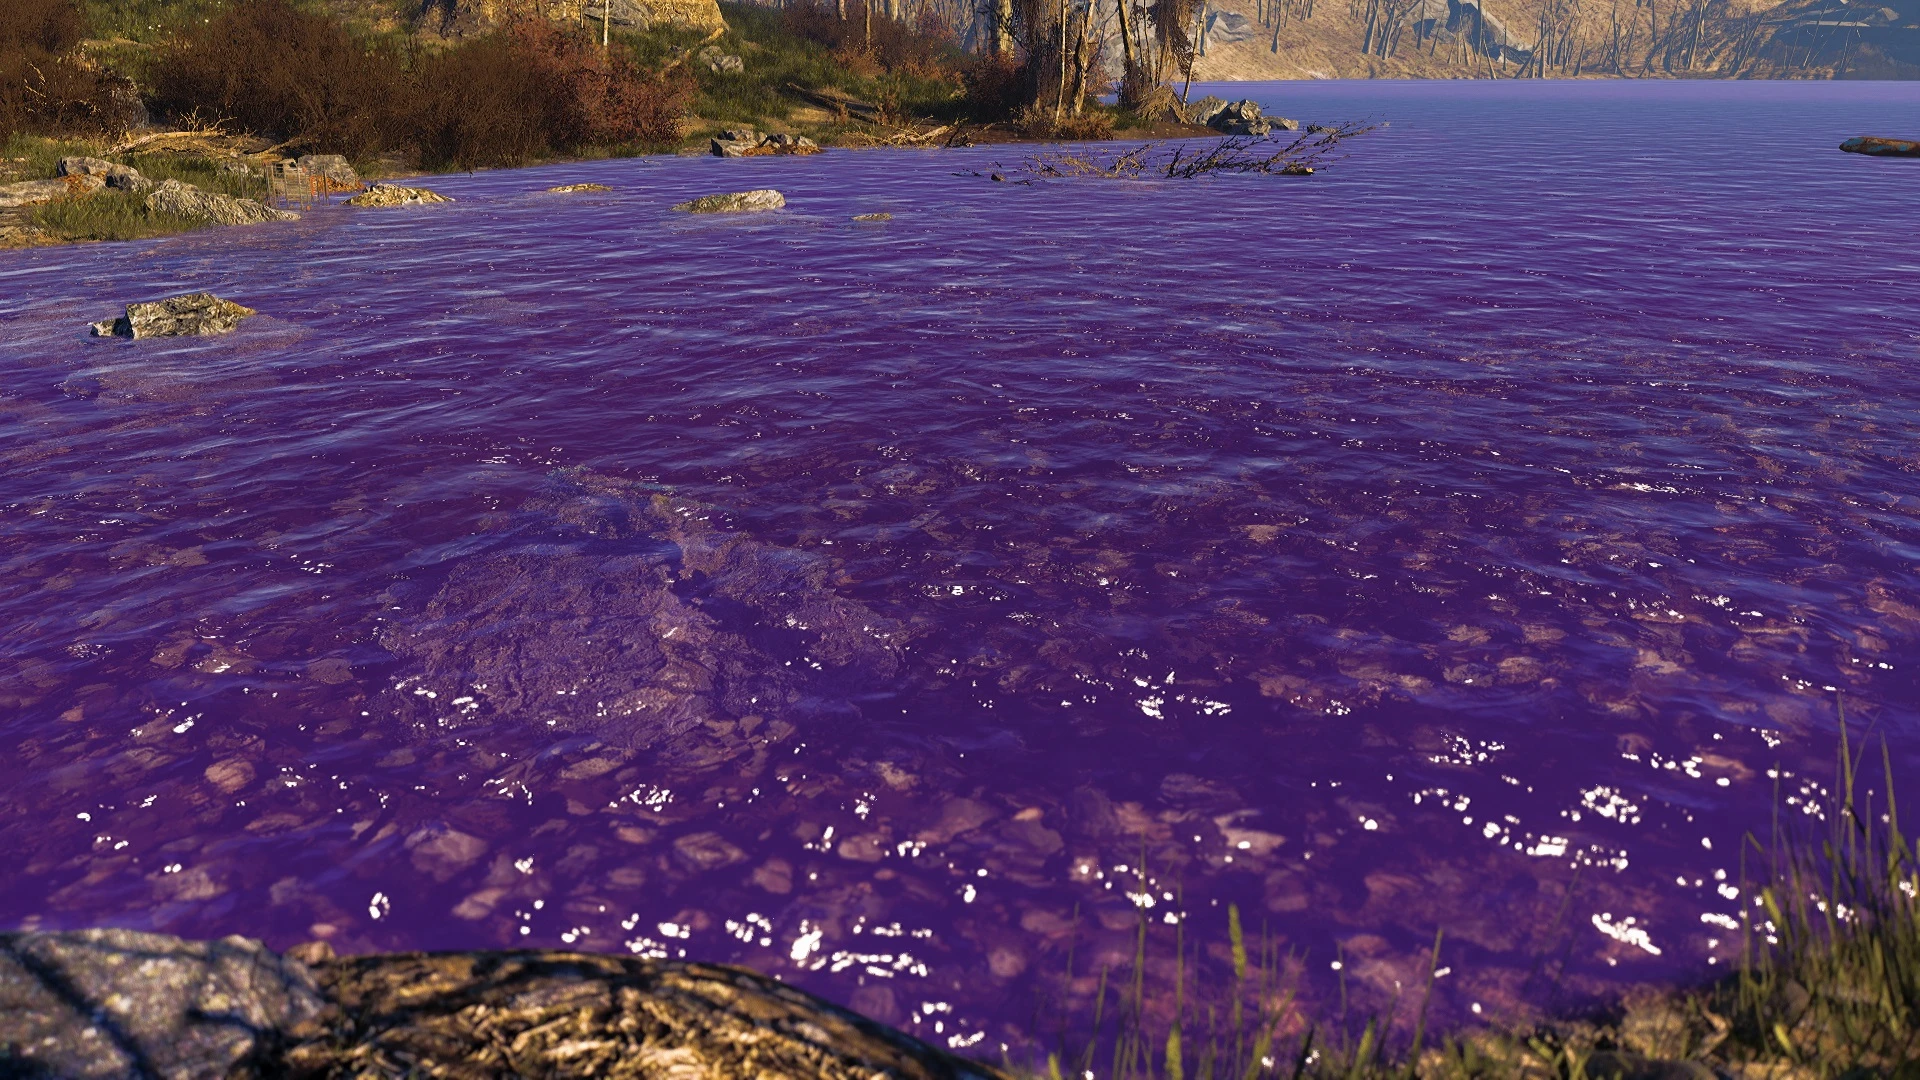 Фиолетовая вода почему. Фиолетовая вода. Гладь воды с фиолетовыми бликами. Фиолетовая вода в реке. Фиолетовая вода острова.